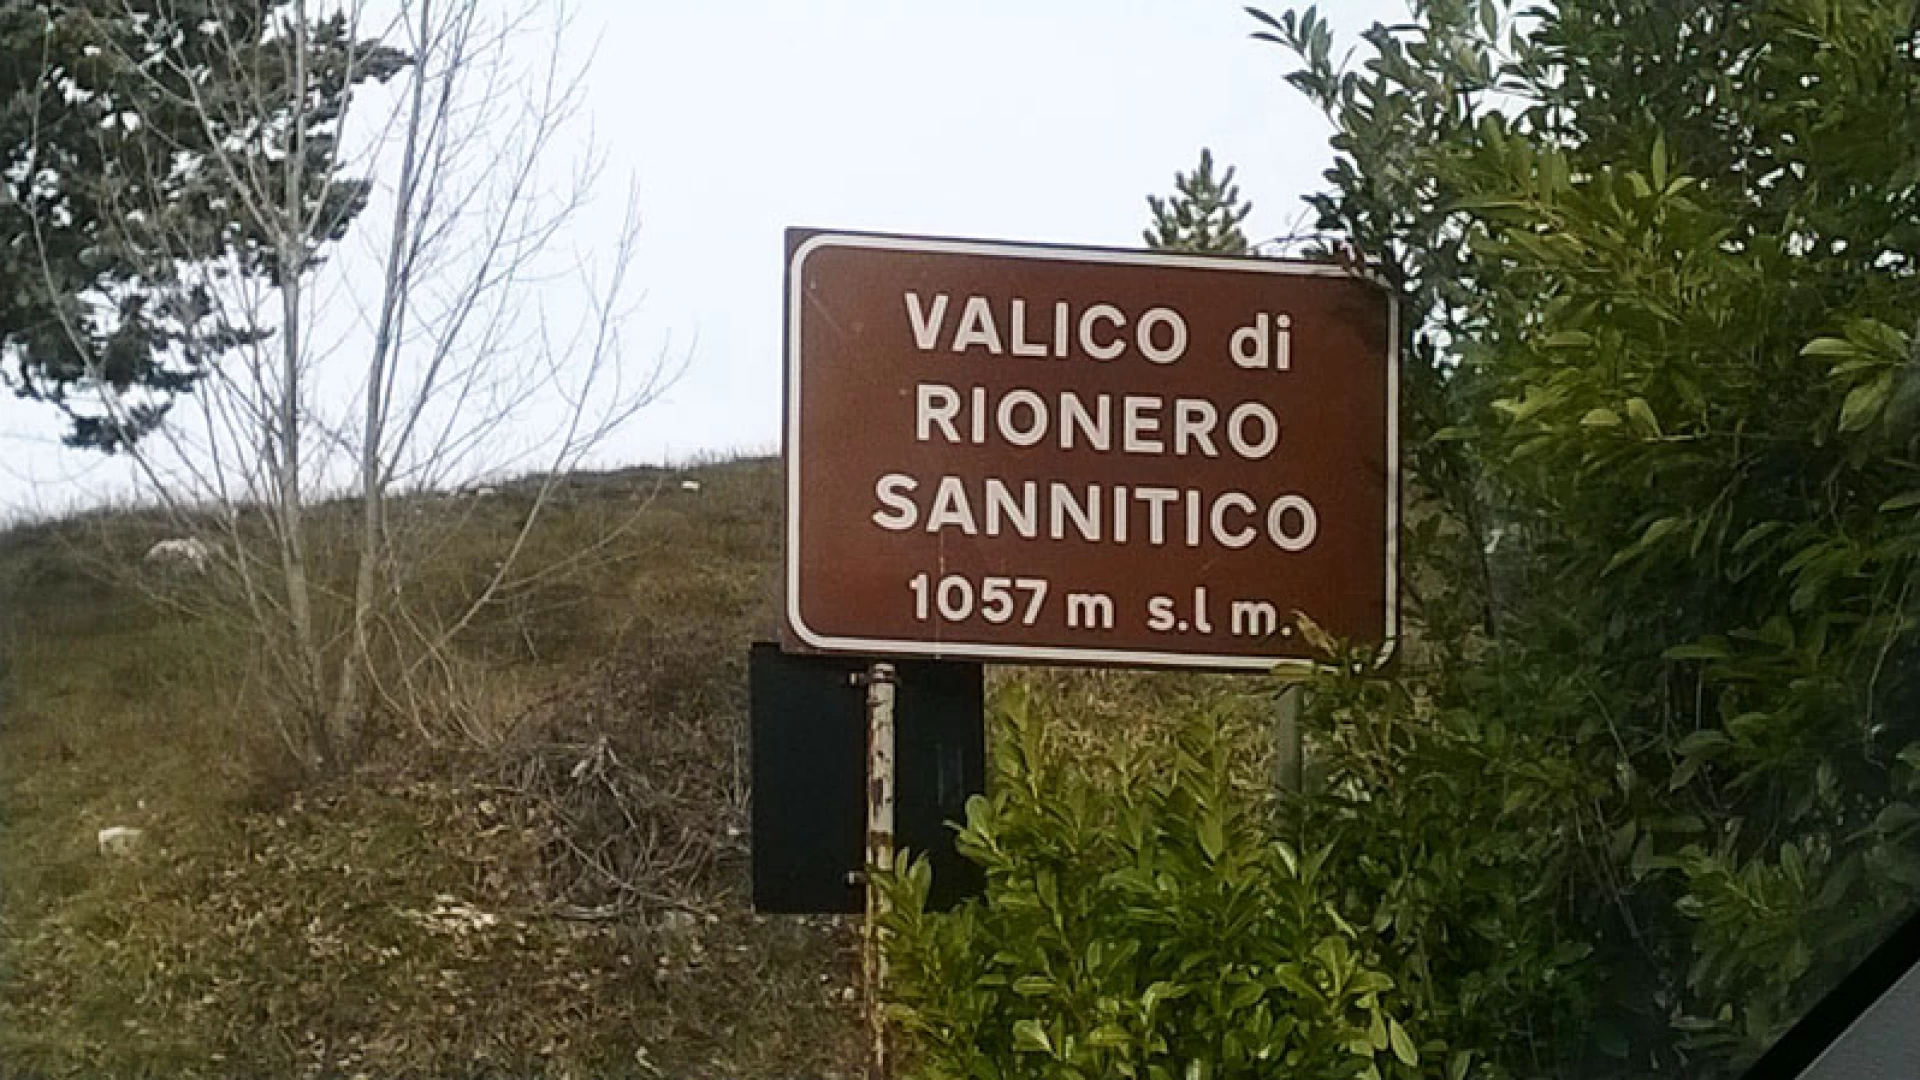 Il Comune di Rionero Sannitico è morto. La minoranza consiliare affigge manifesti funebri per tutto il paese. Bilancio consuntivo chiuso con un debito di quasi 800mila euro.